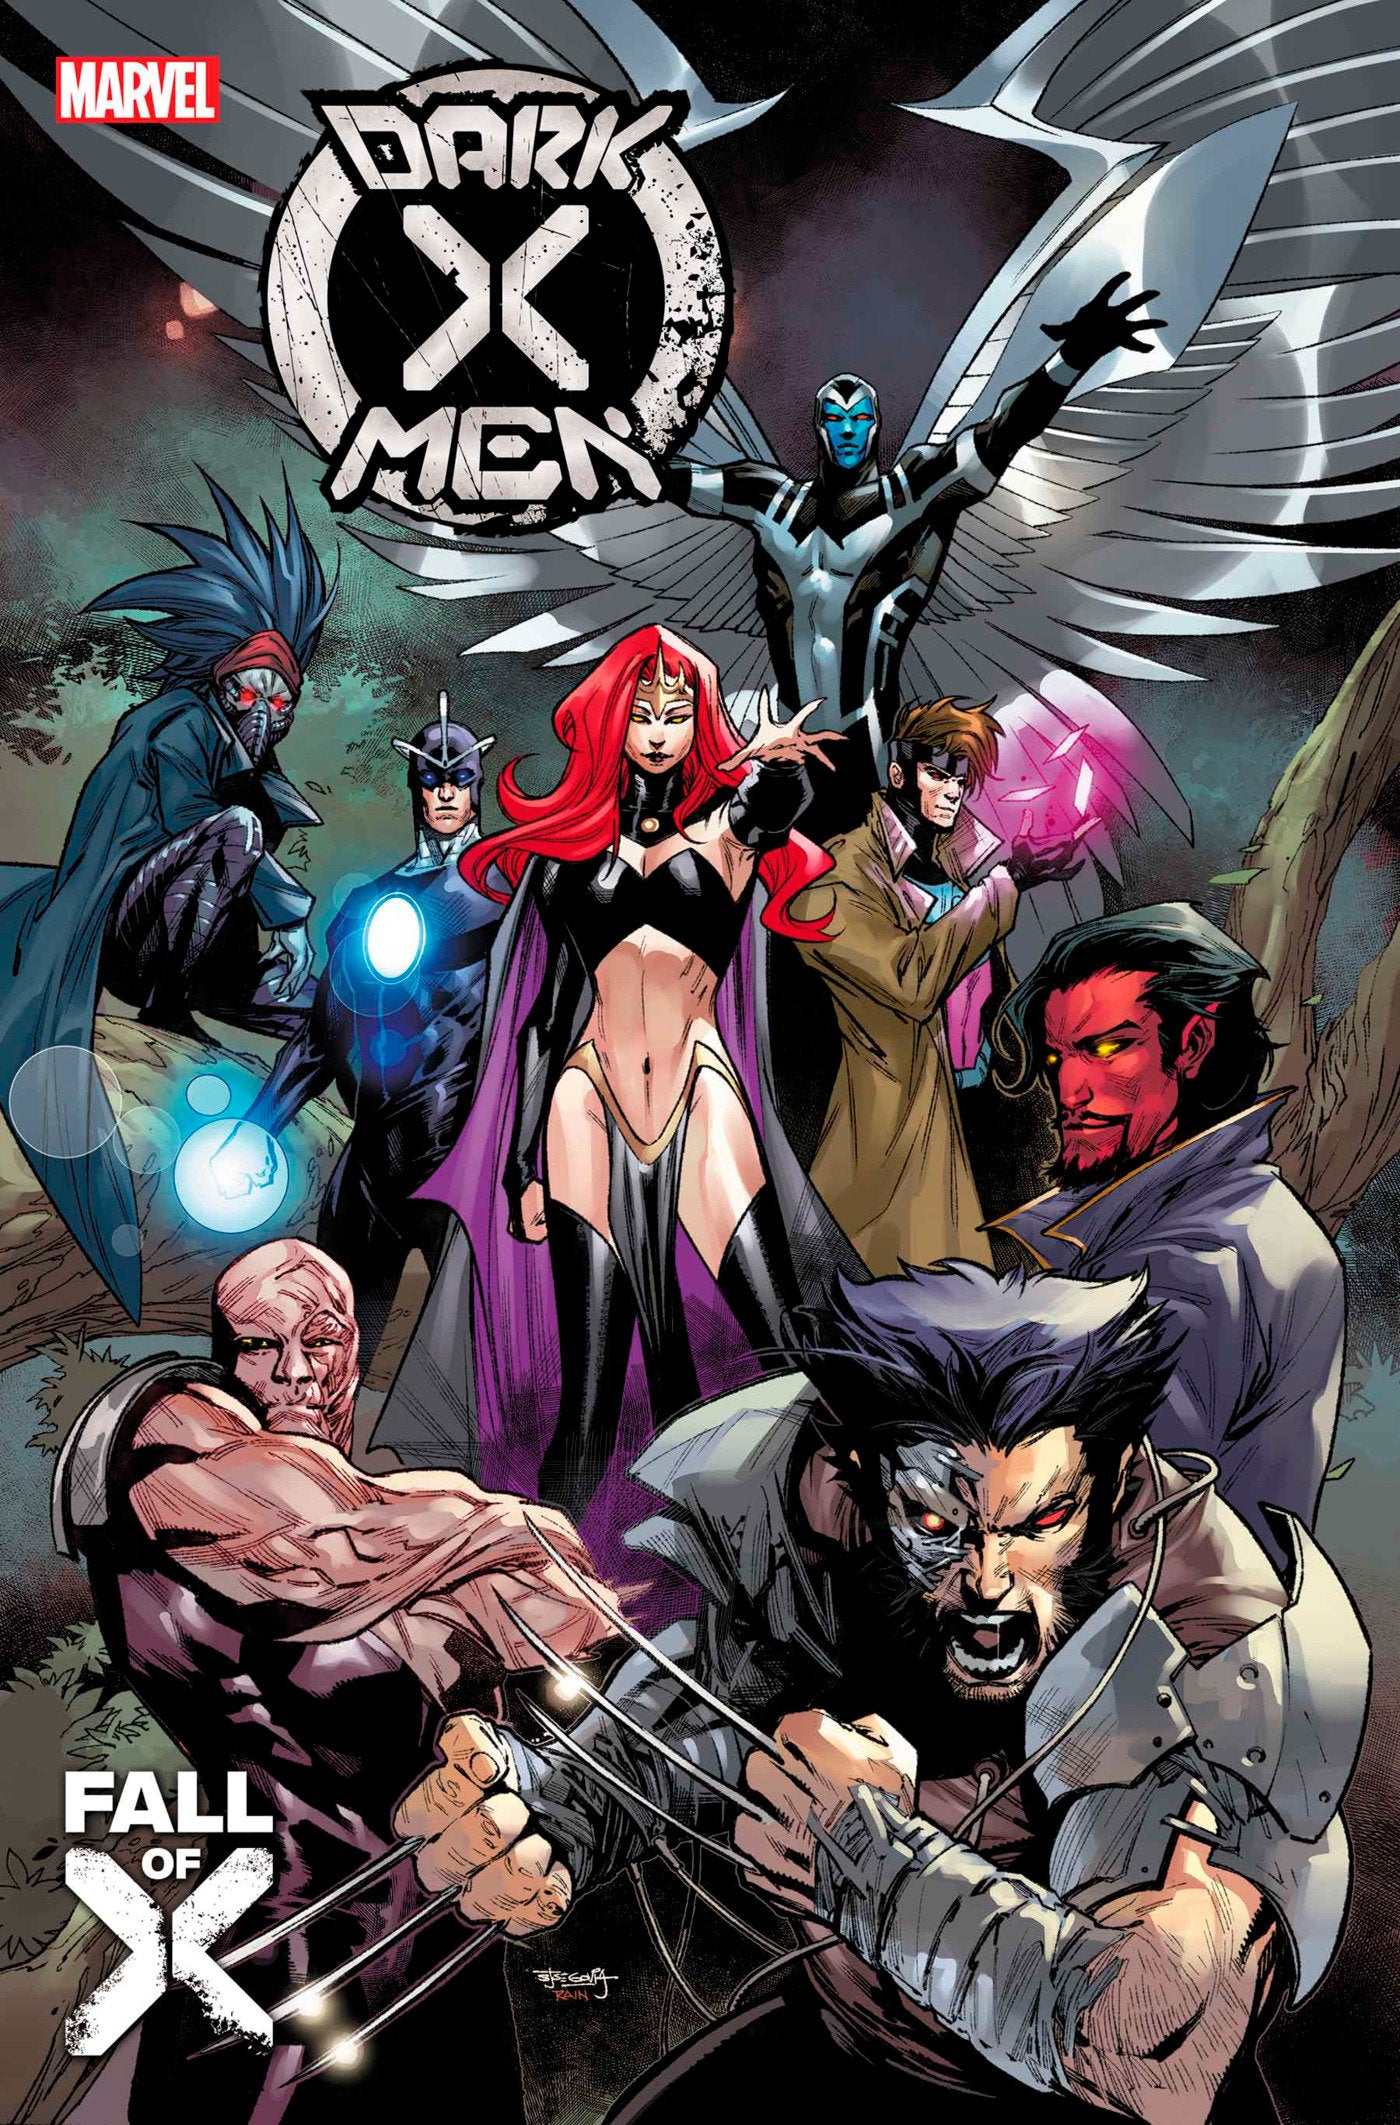 Dark X-Men 1 [Fall]